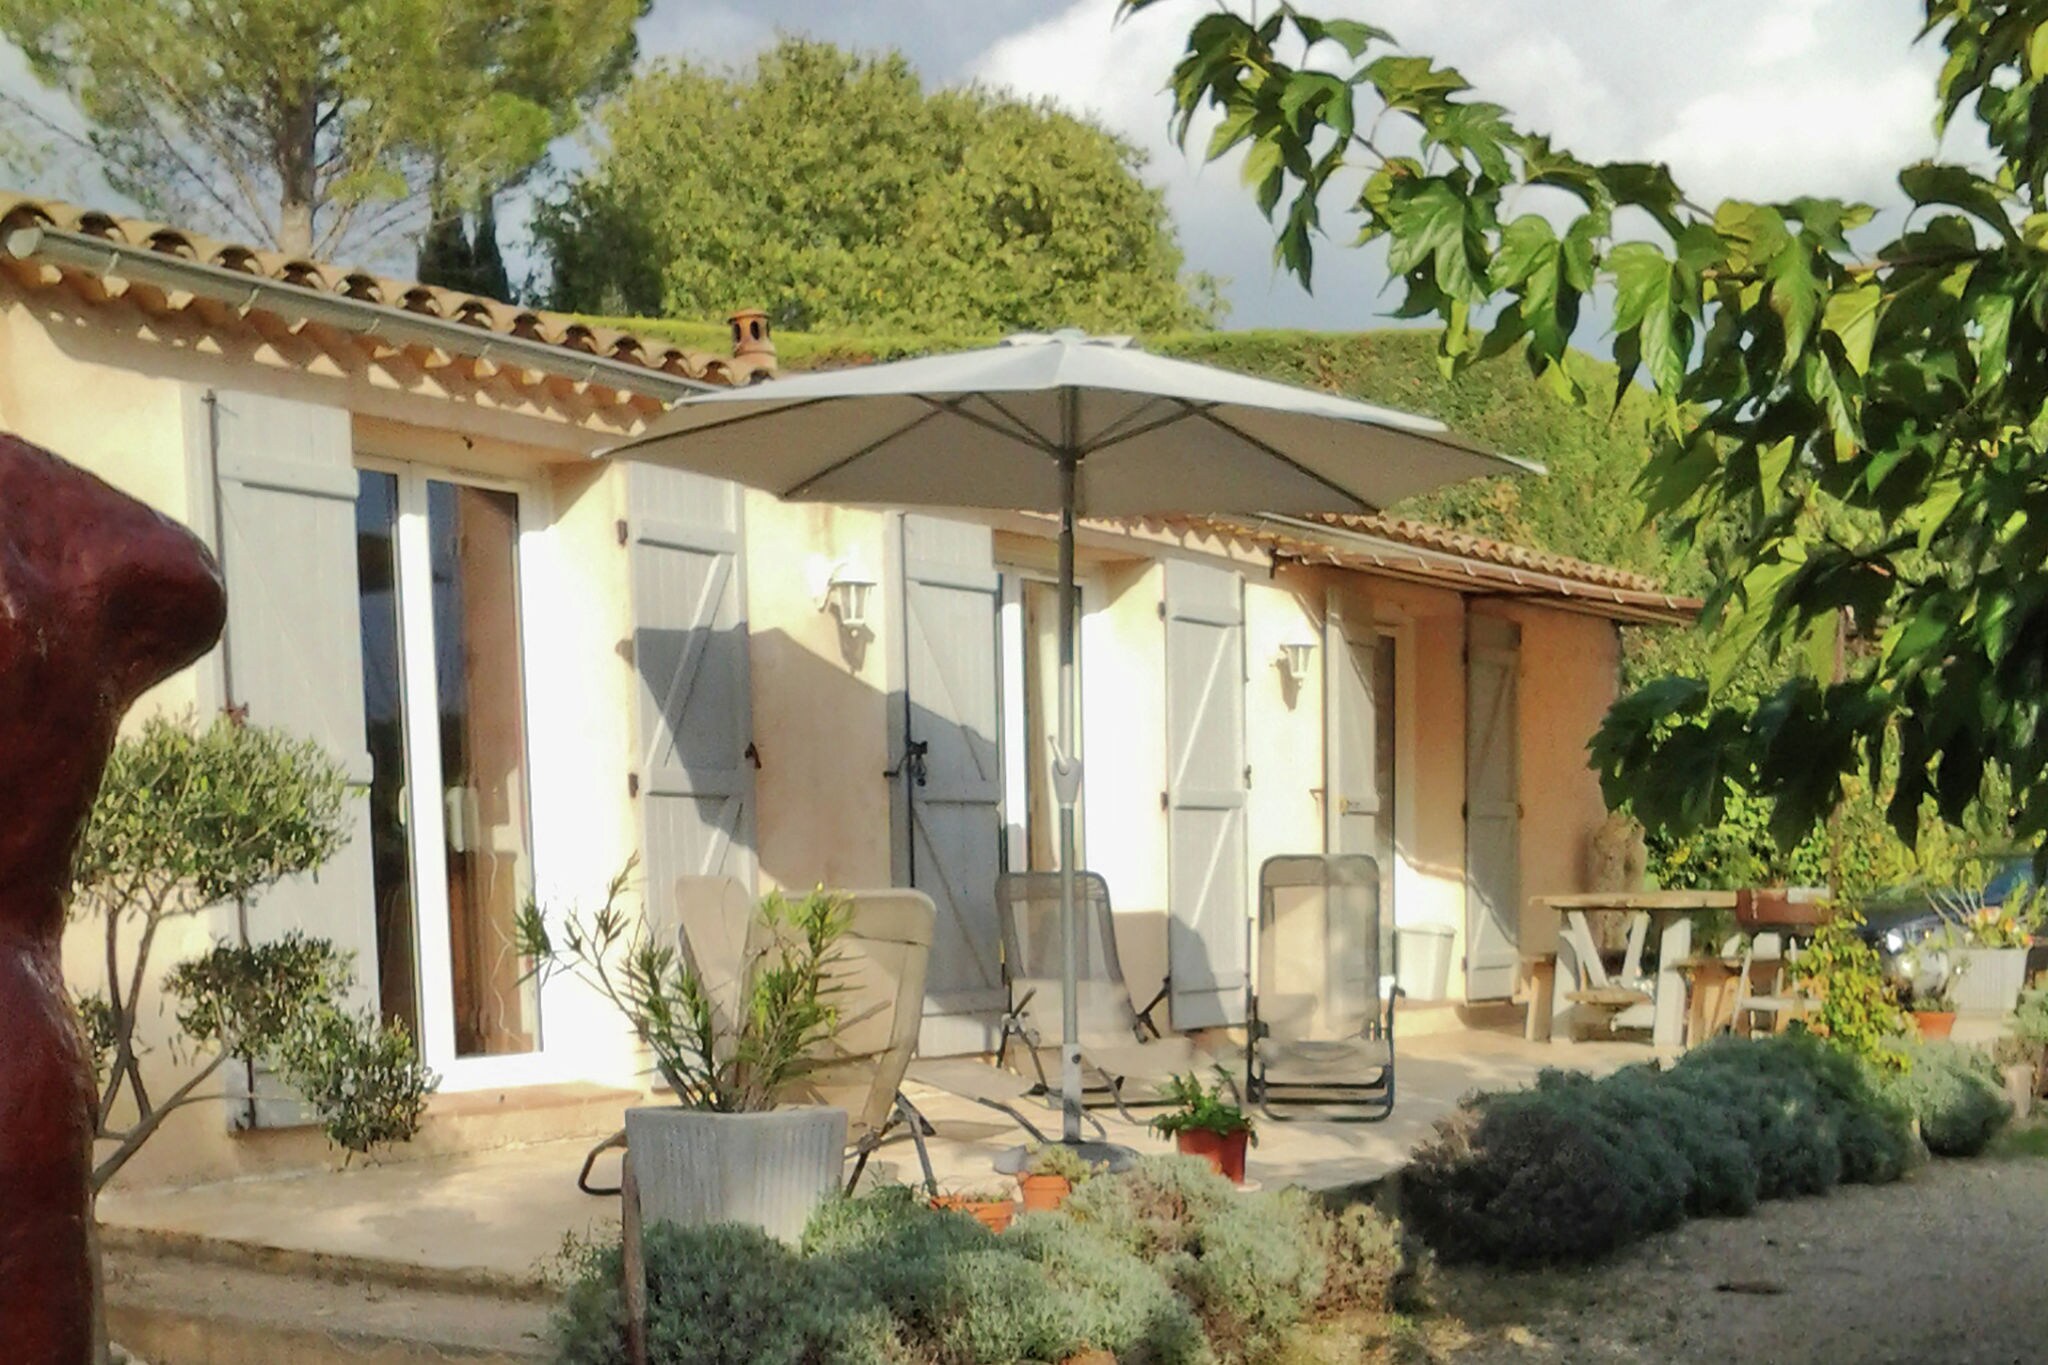 Maison de vacances romantique avec petite piscine privée, située en Provence.